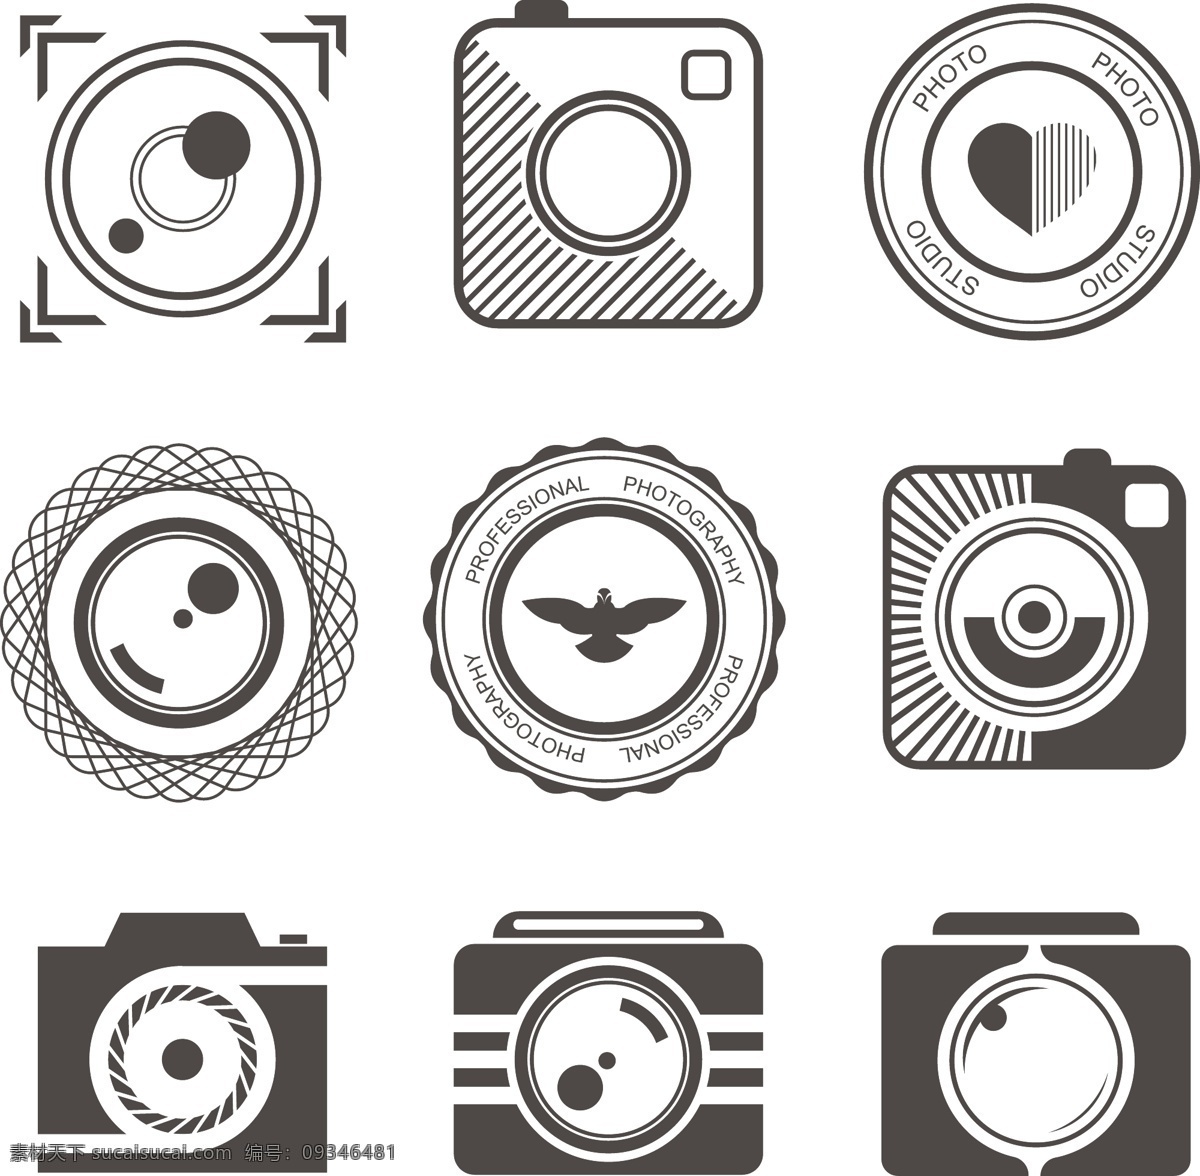 标签 摄像 拍摄 相机 摄像机 logo 标志 图标 logo设计 标志设计 图标设计 标记 记号 标牌 标识 商标 美术 简洁 白色